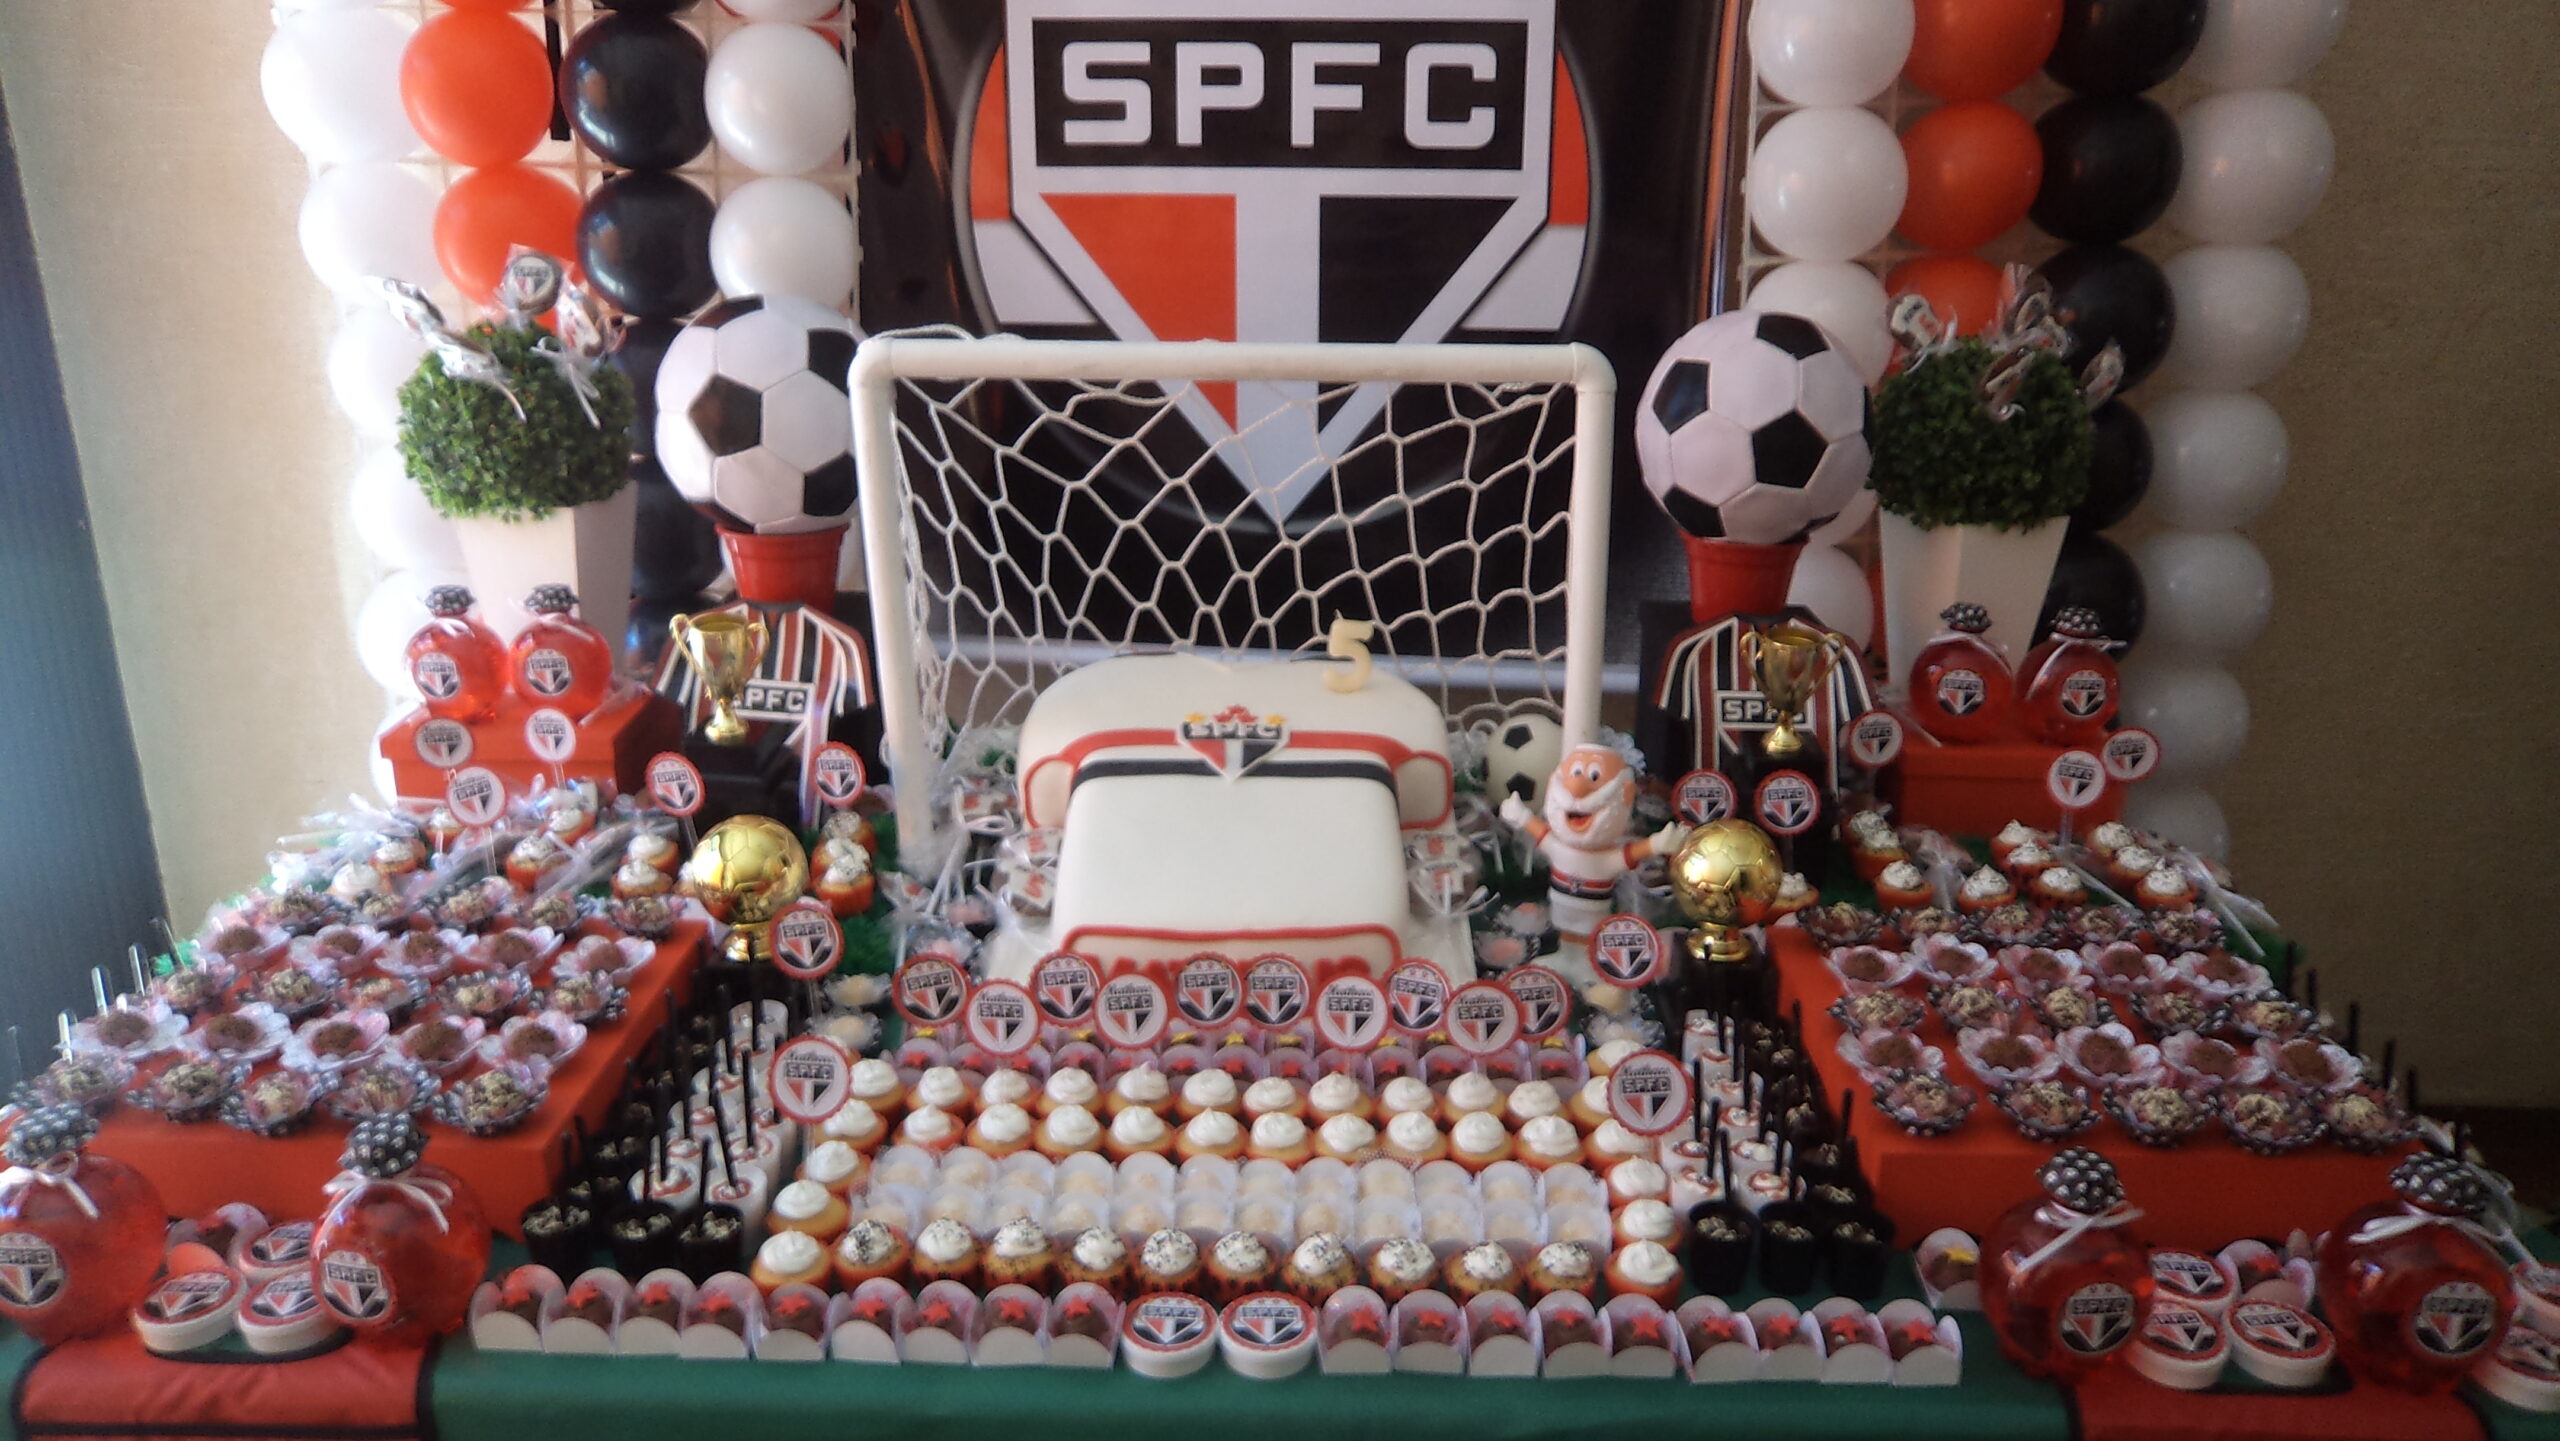 Topo de bolo São Paulo Futebol Clube SPFC para imprimir - confira diversas imagens para enfeitar bolos, tortas, cakes e cupcakes com o tema do amado tricolor paulista.